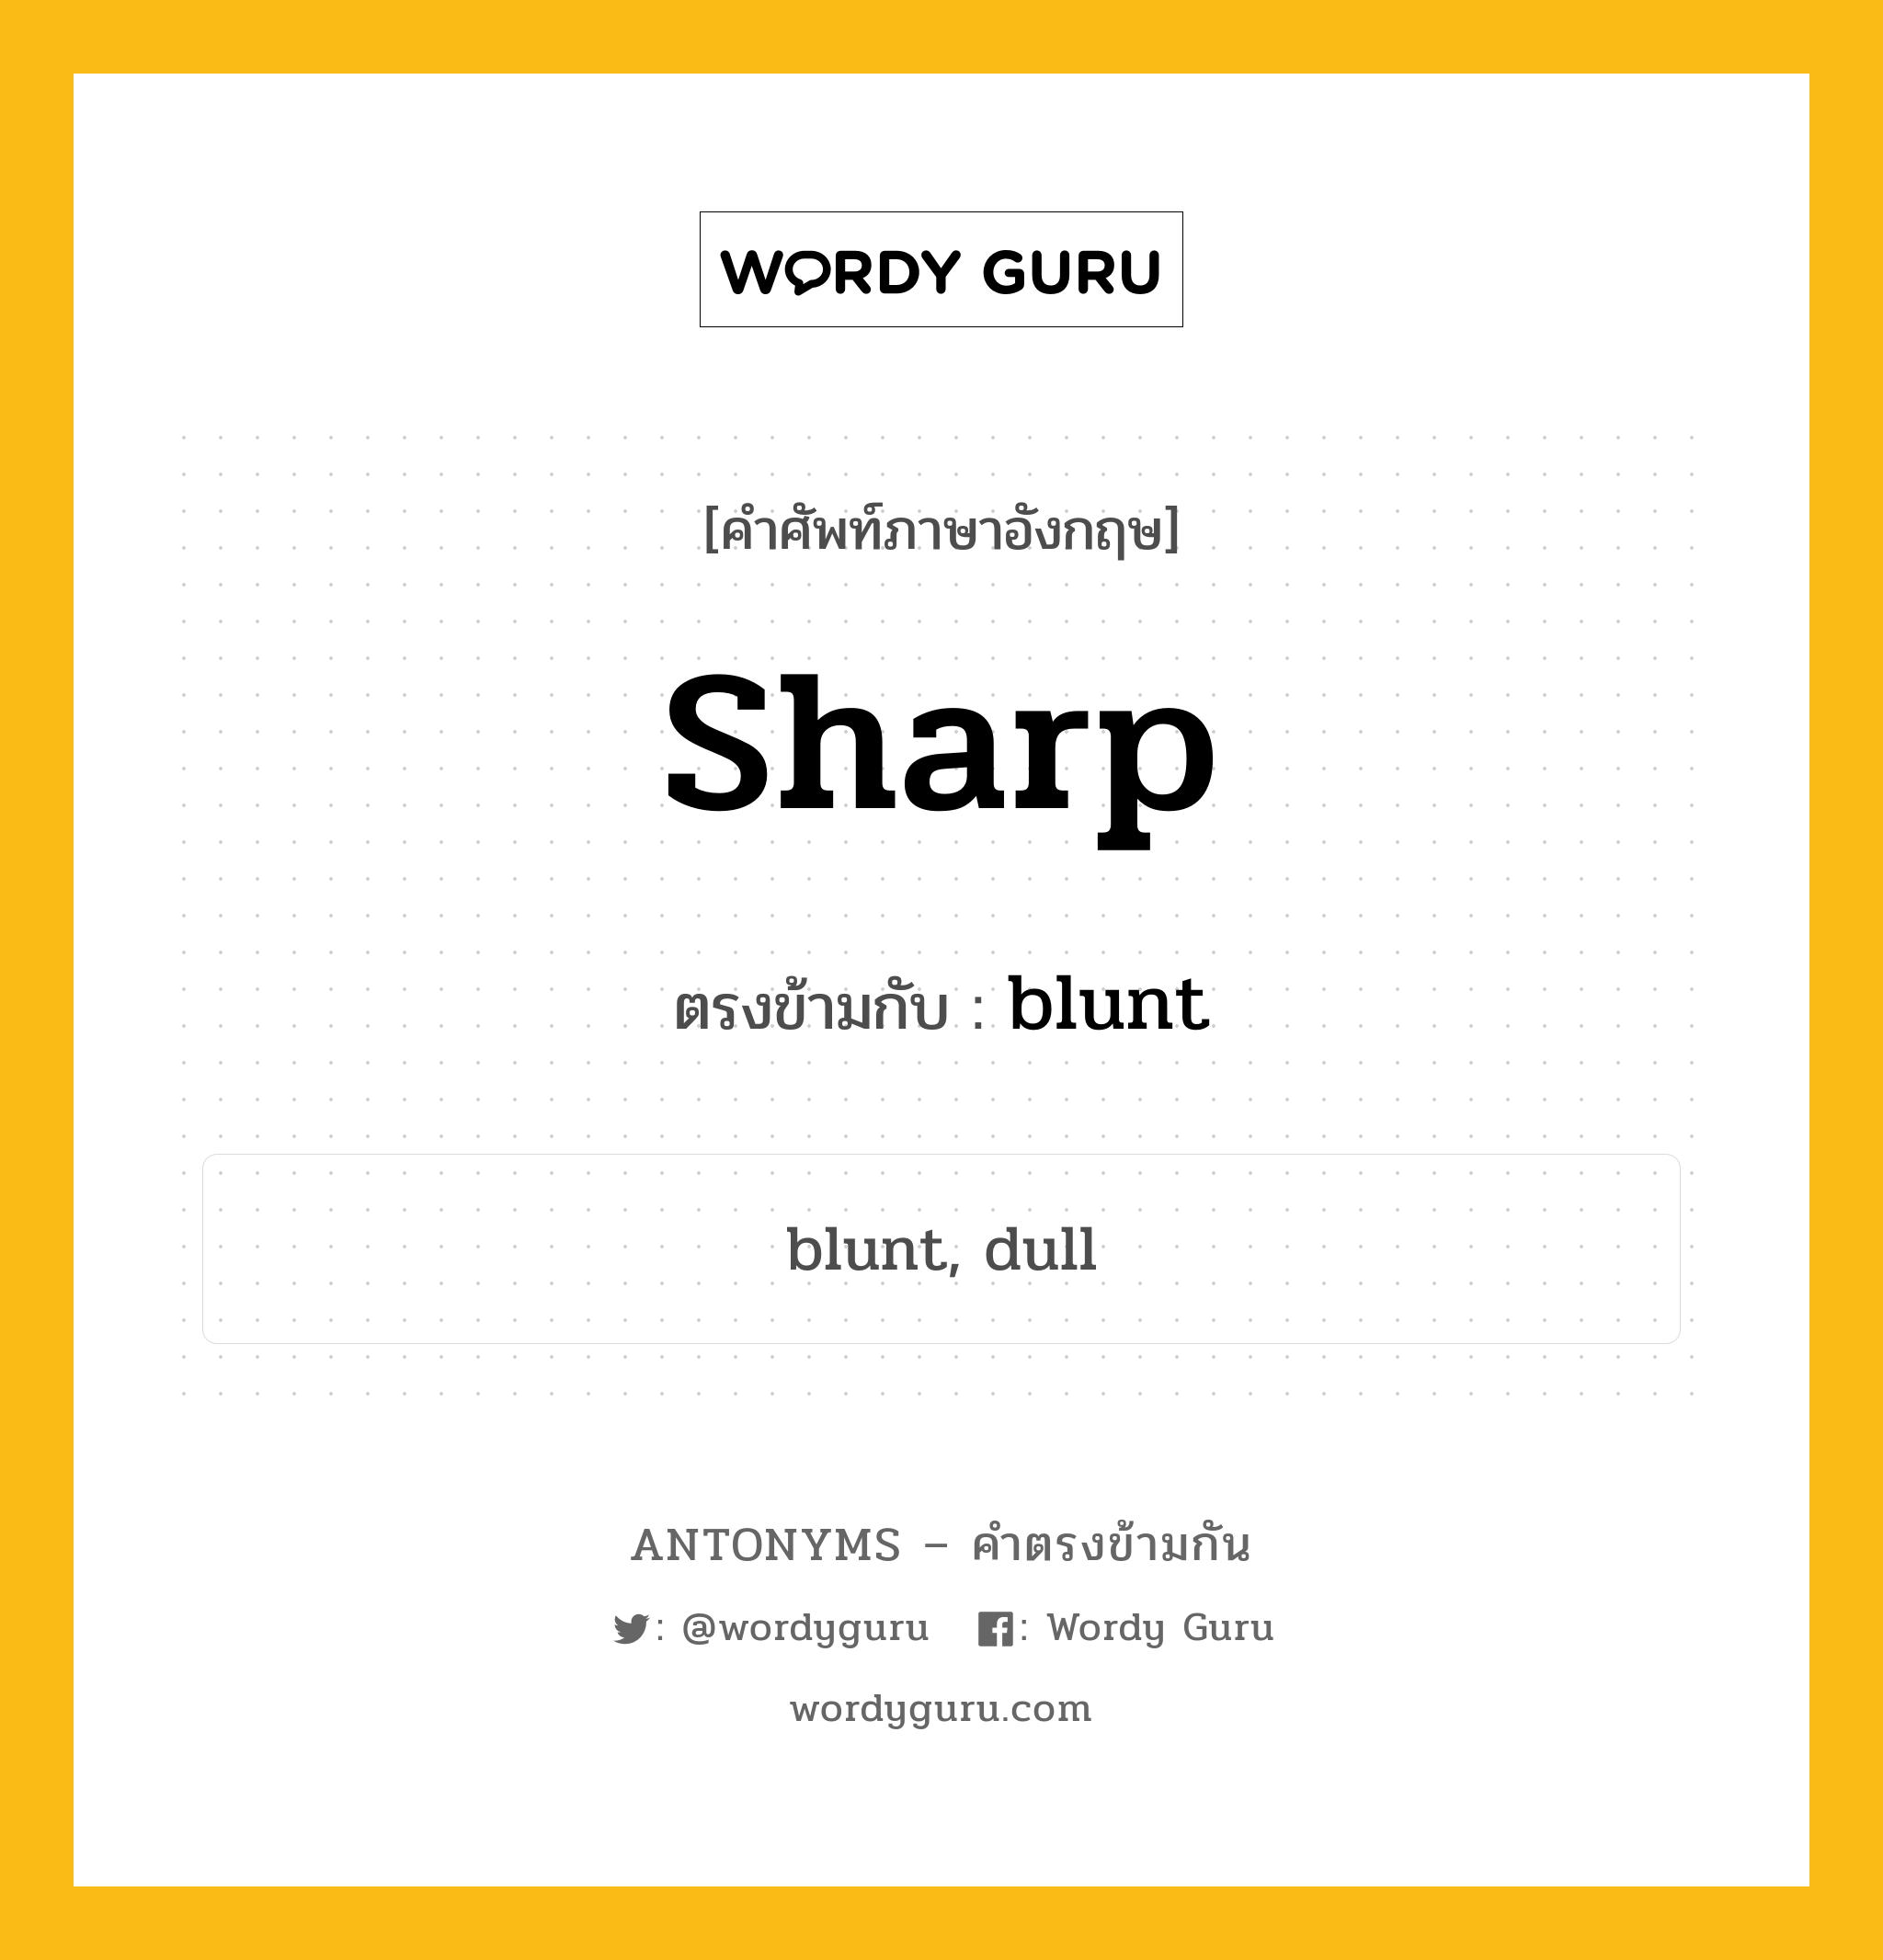 sharp เป็นคำตรงข้ามกับคำไหนบ้าง?, คำศัพท์ภาษาอังกฤษ sharp ตรงข้ามกับ blunt หมวด blunt